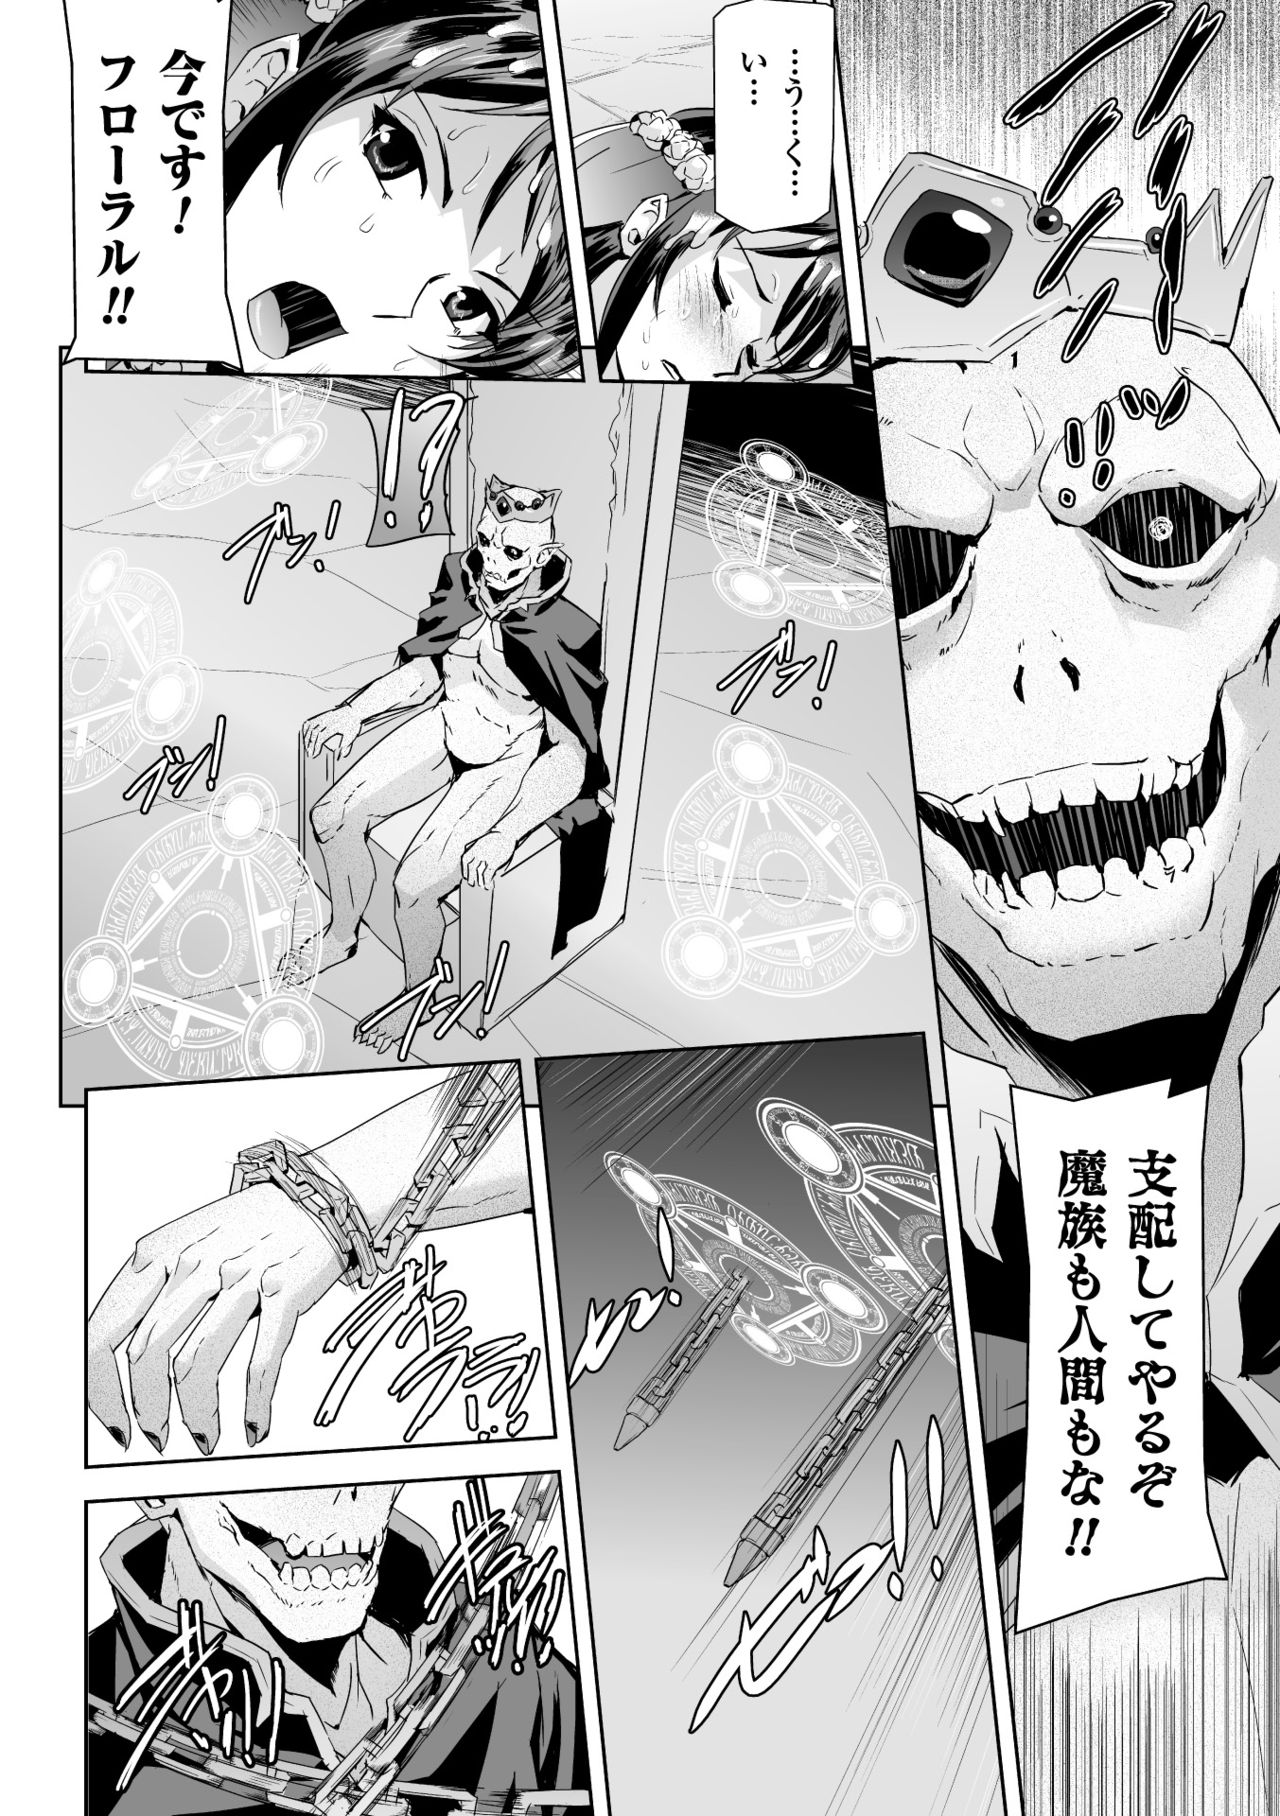 [Anthology] Seigi no Heroine Kangoku File Vol. 2 [Digital] page 46 full